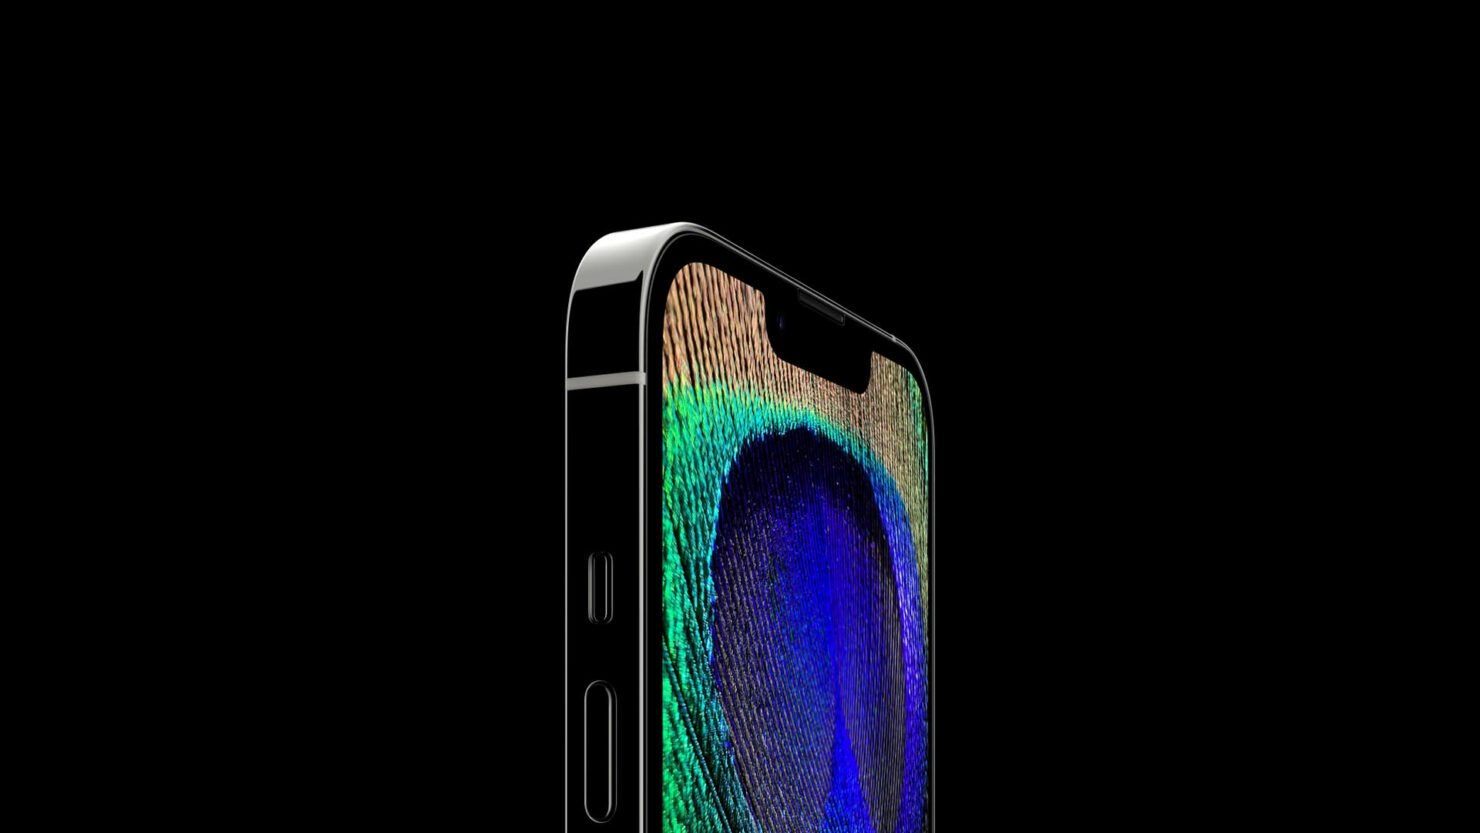 Voici ce que la caméra infrarouge TrueDepth de l'iPhone 13 Pro Max voit lorsqu'elle tente de cartographier vos données faciales